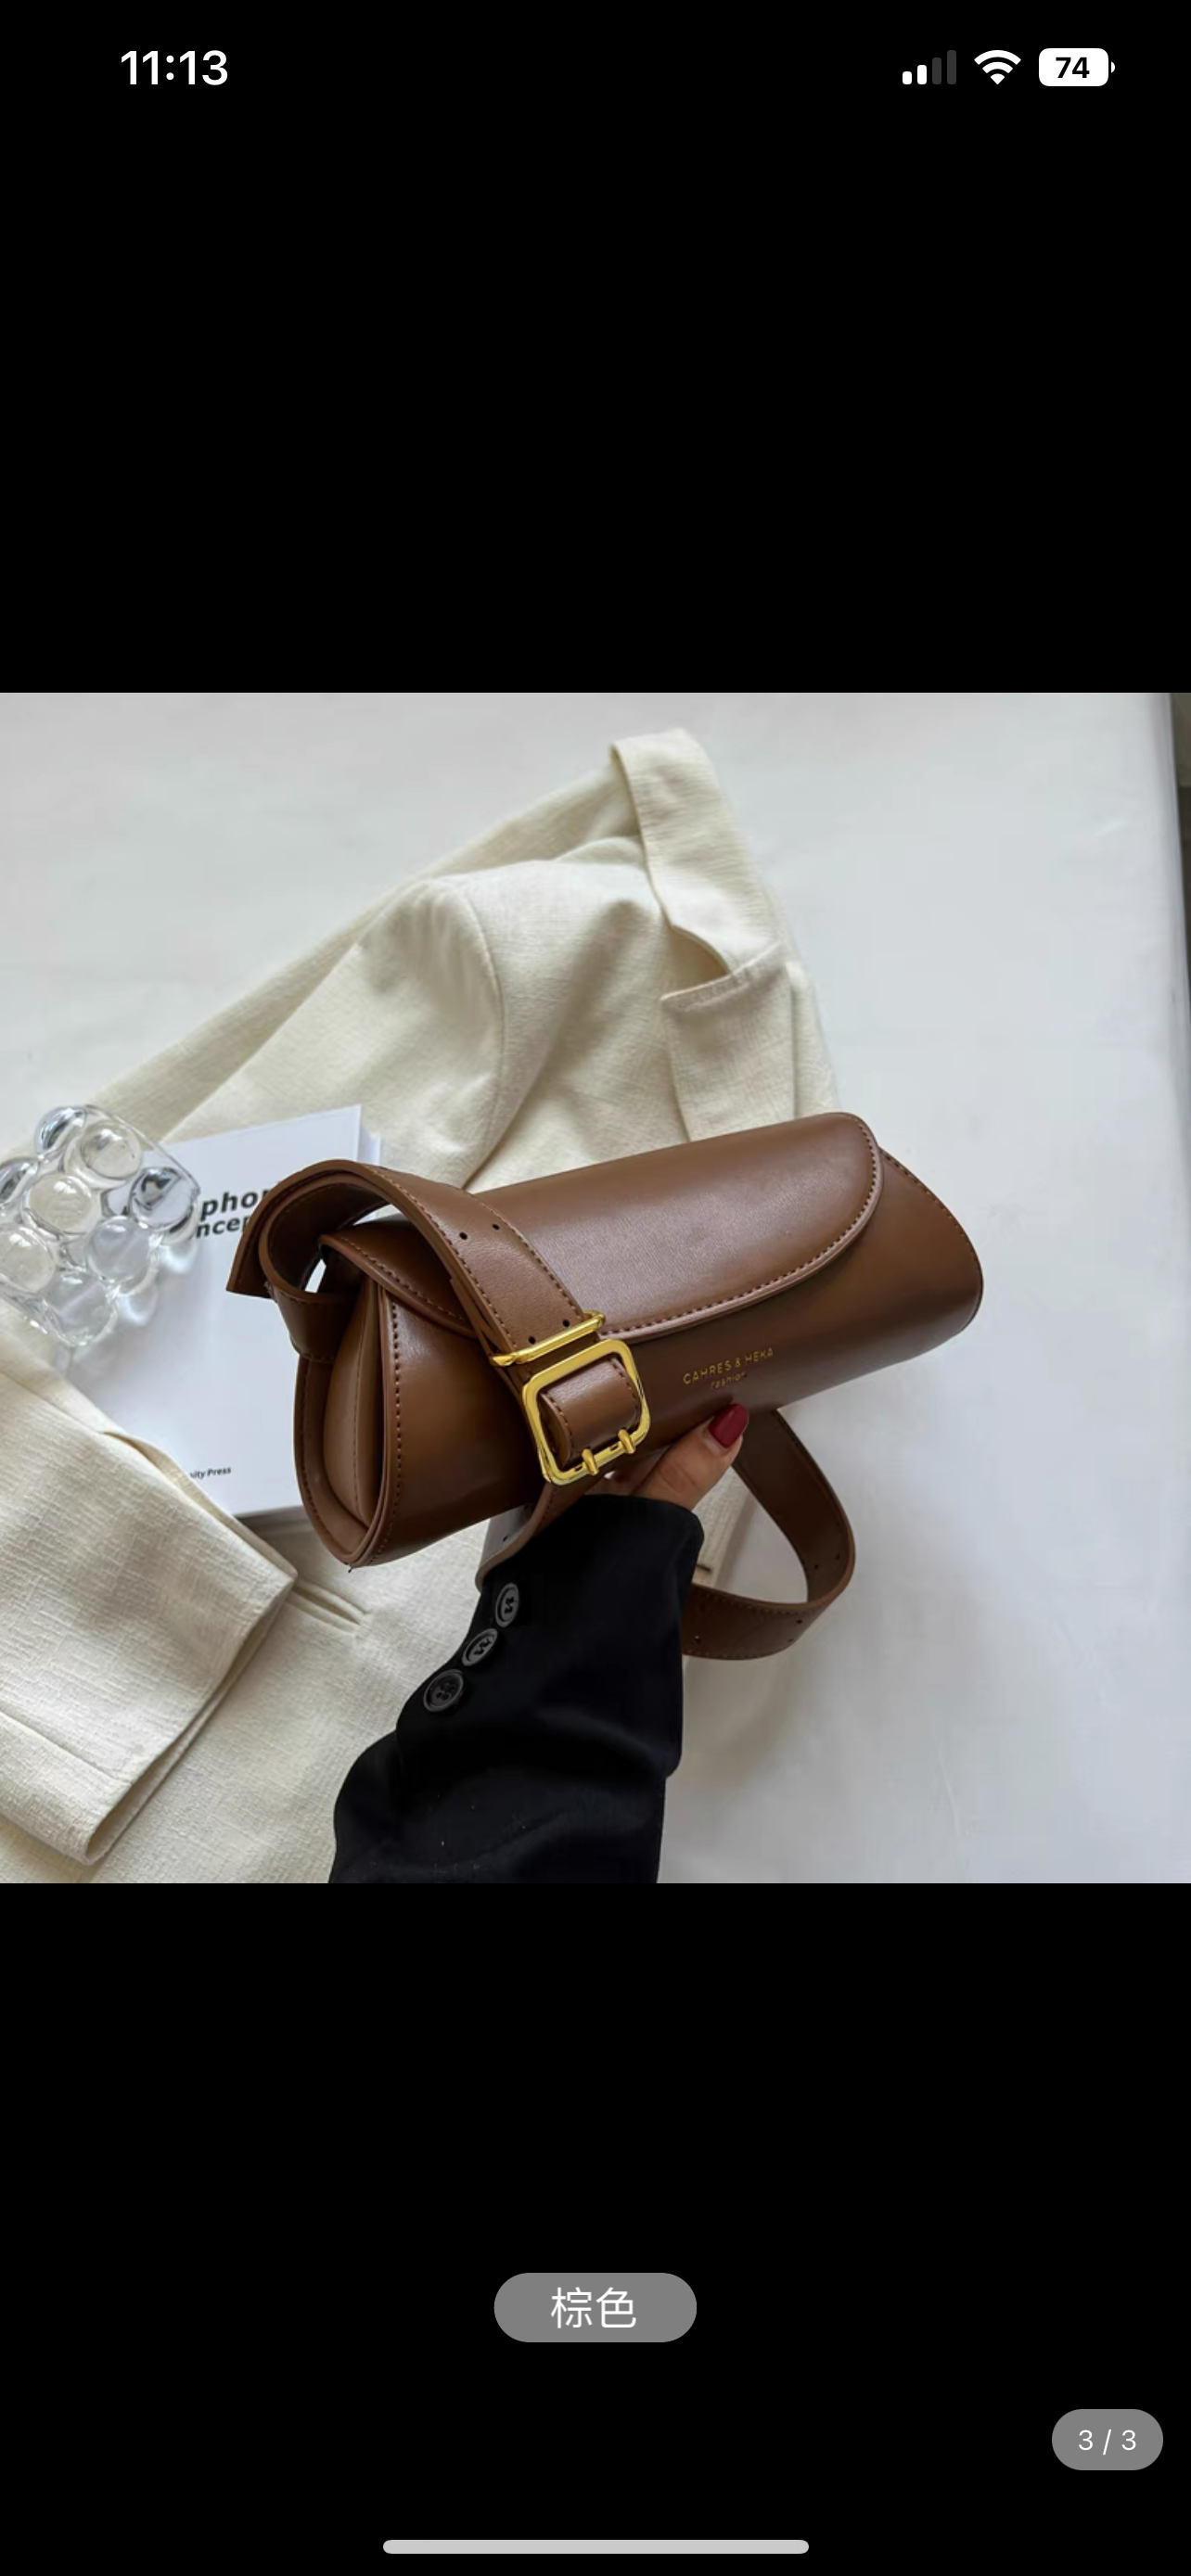 Fashionable Texture Solid Color Single-shoulder Baguette Bag